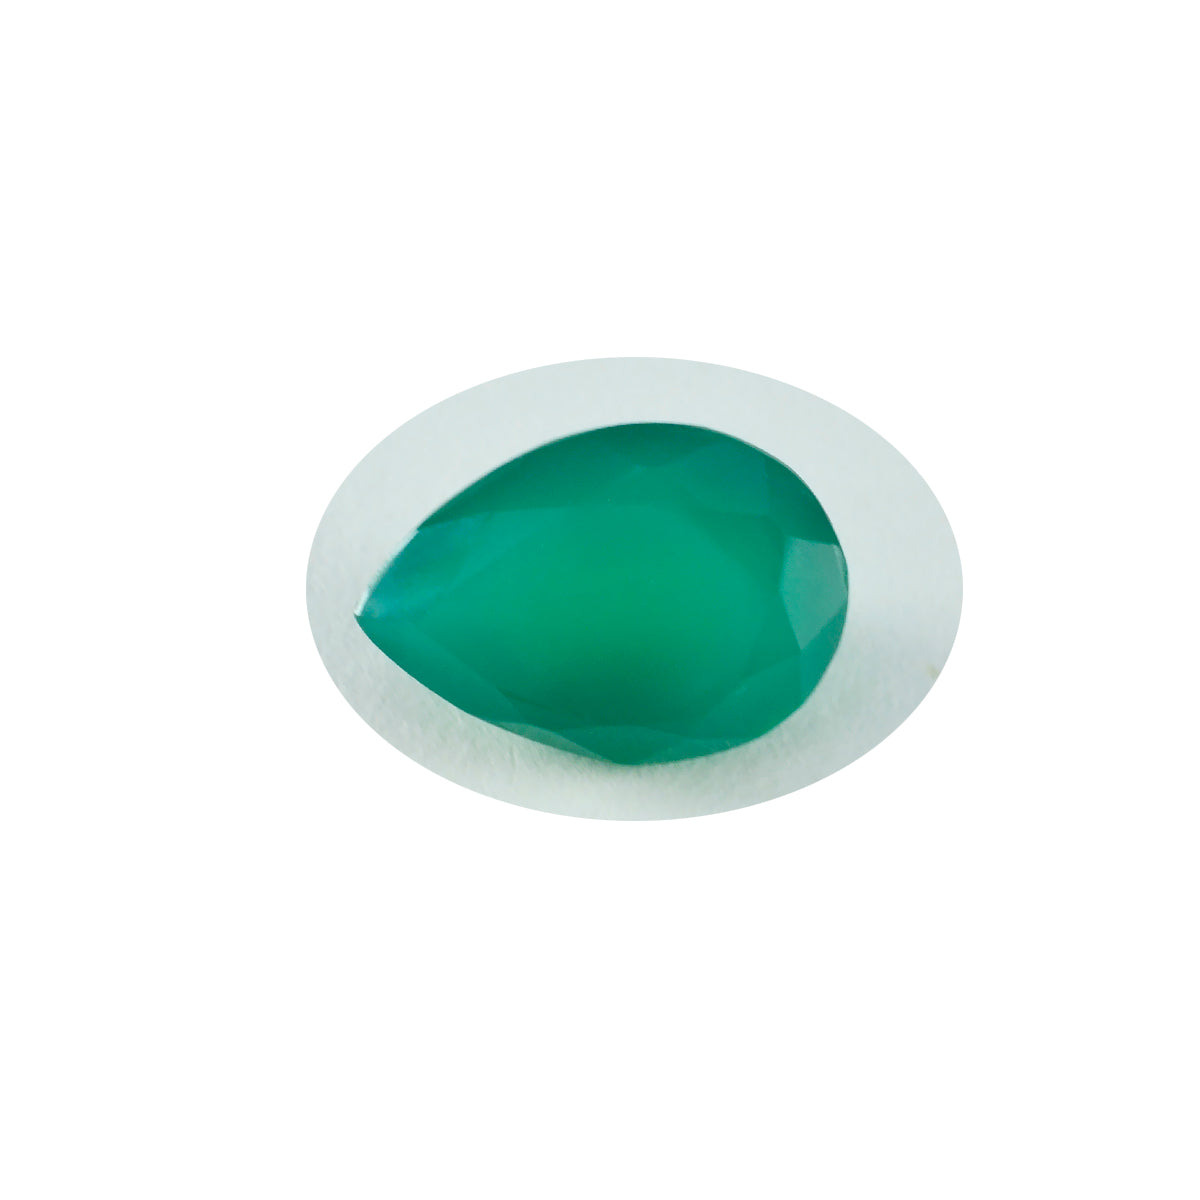 riyogems 1 шт. натуральная зеленая яшма граненая 12x16 мм грушевидная форма качество A1 свободный драгоценный камень